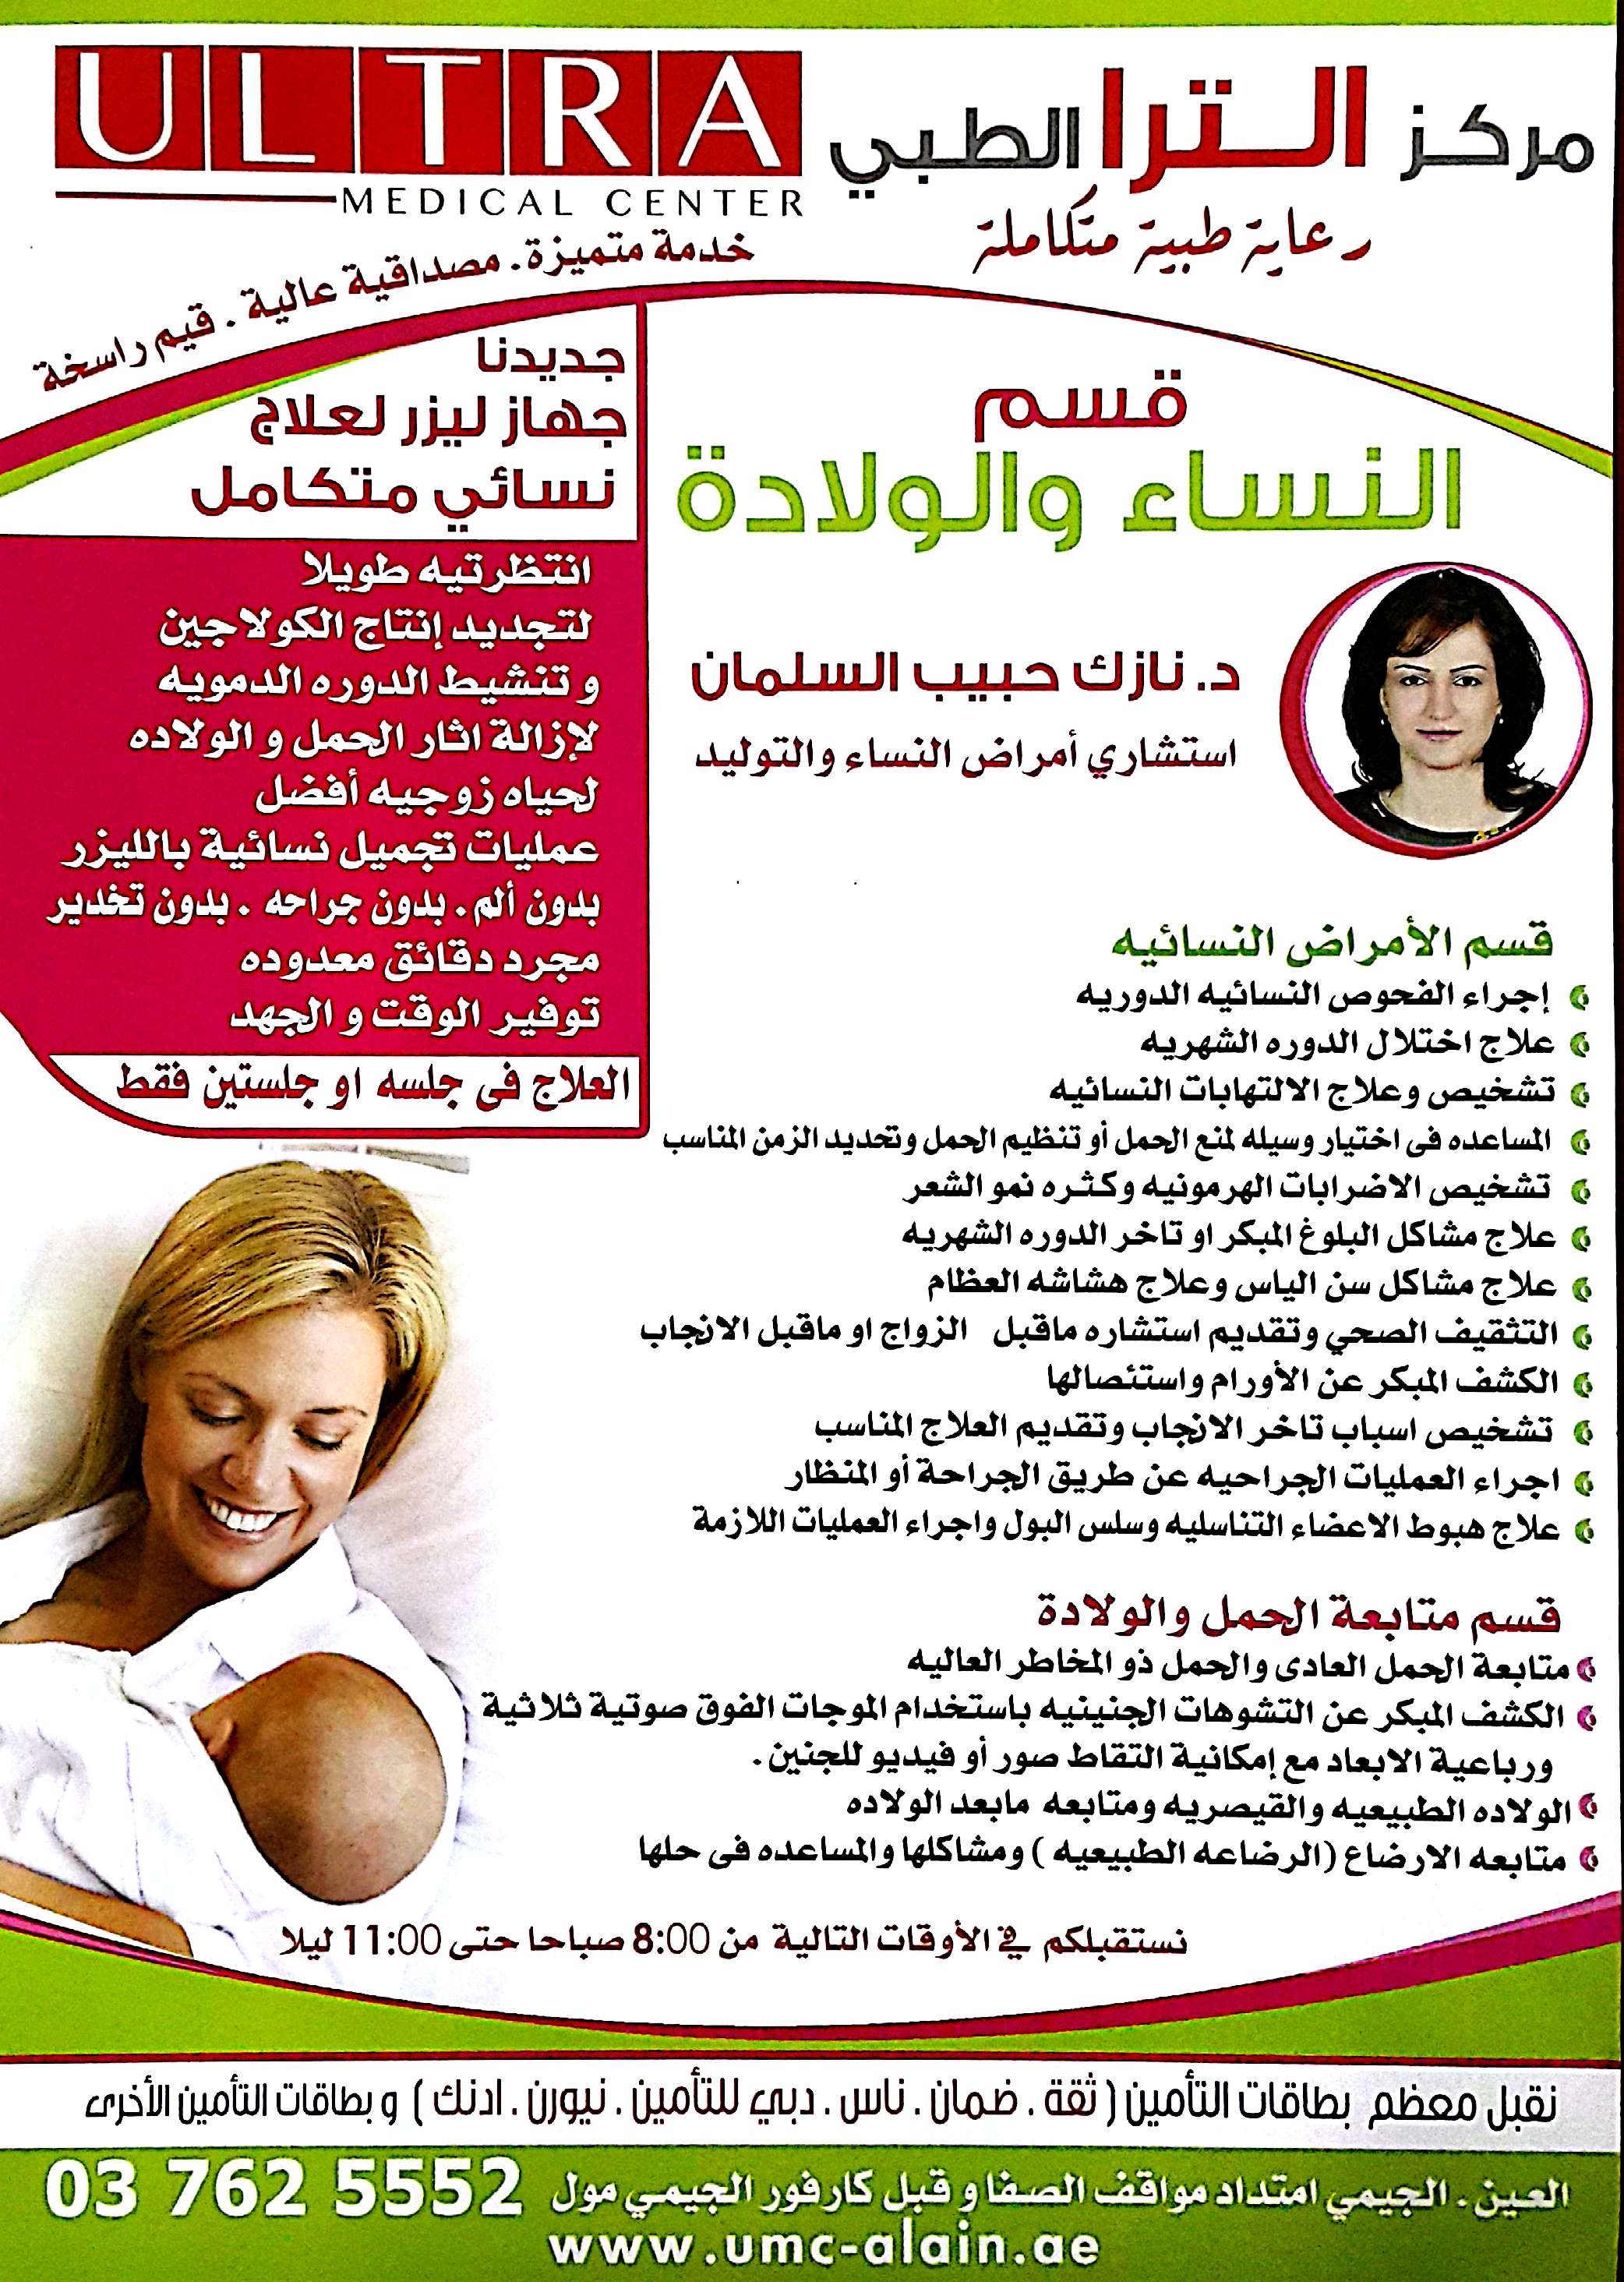 مركز الترا الطبي بمدينة العين , الجيمي 037625552 P_509kcq1i1